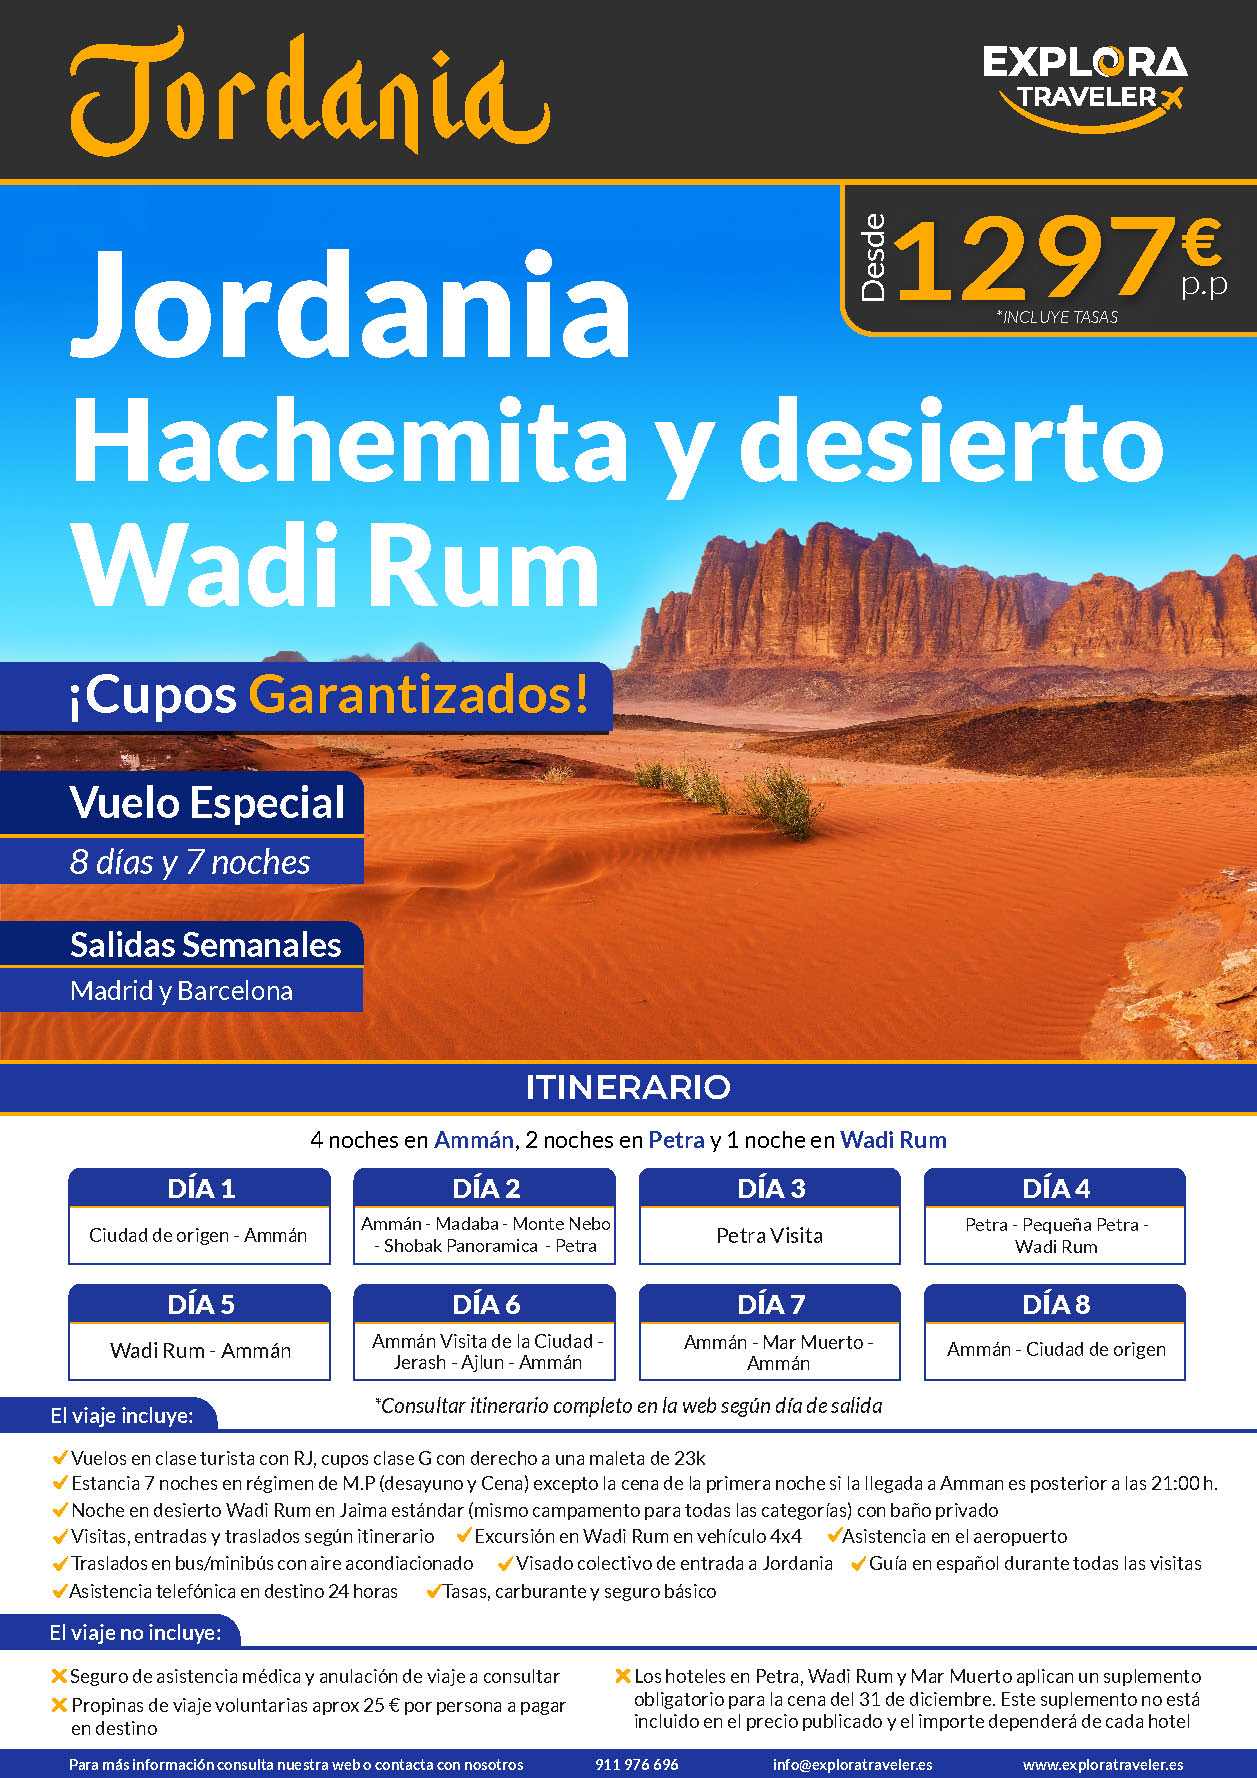 Oferta Explora Traveler Jordania Hachemita y Wadi Rum cupos 8 dias Media Pension salidas 2023 vuelo directo desde Madrid y Barcelona